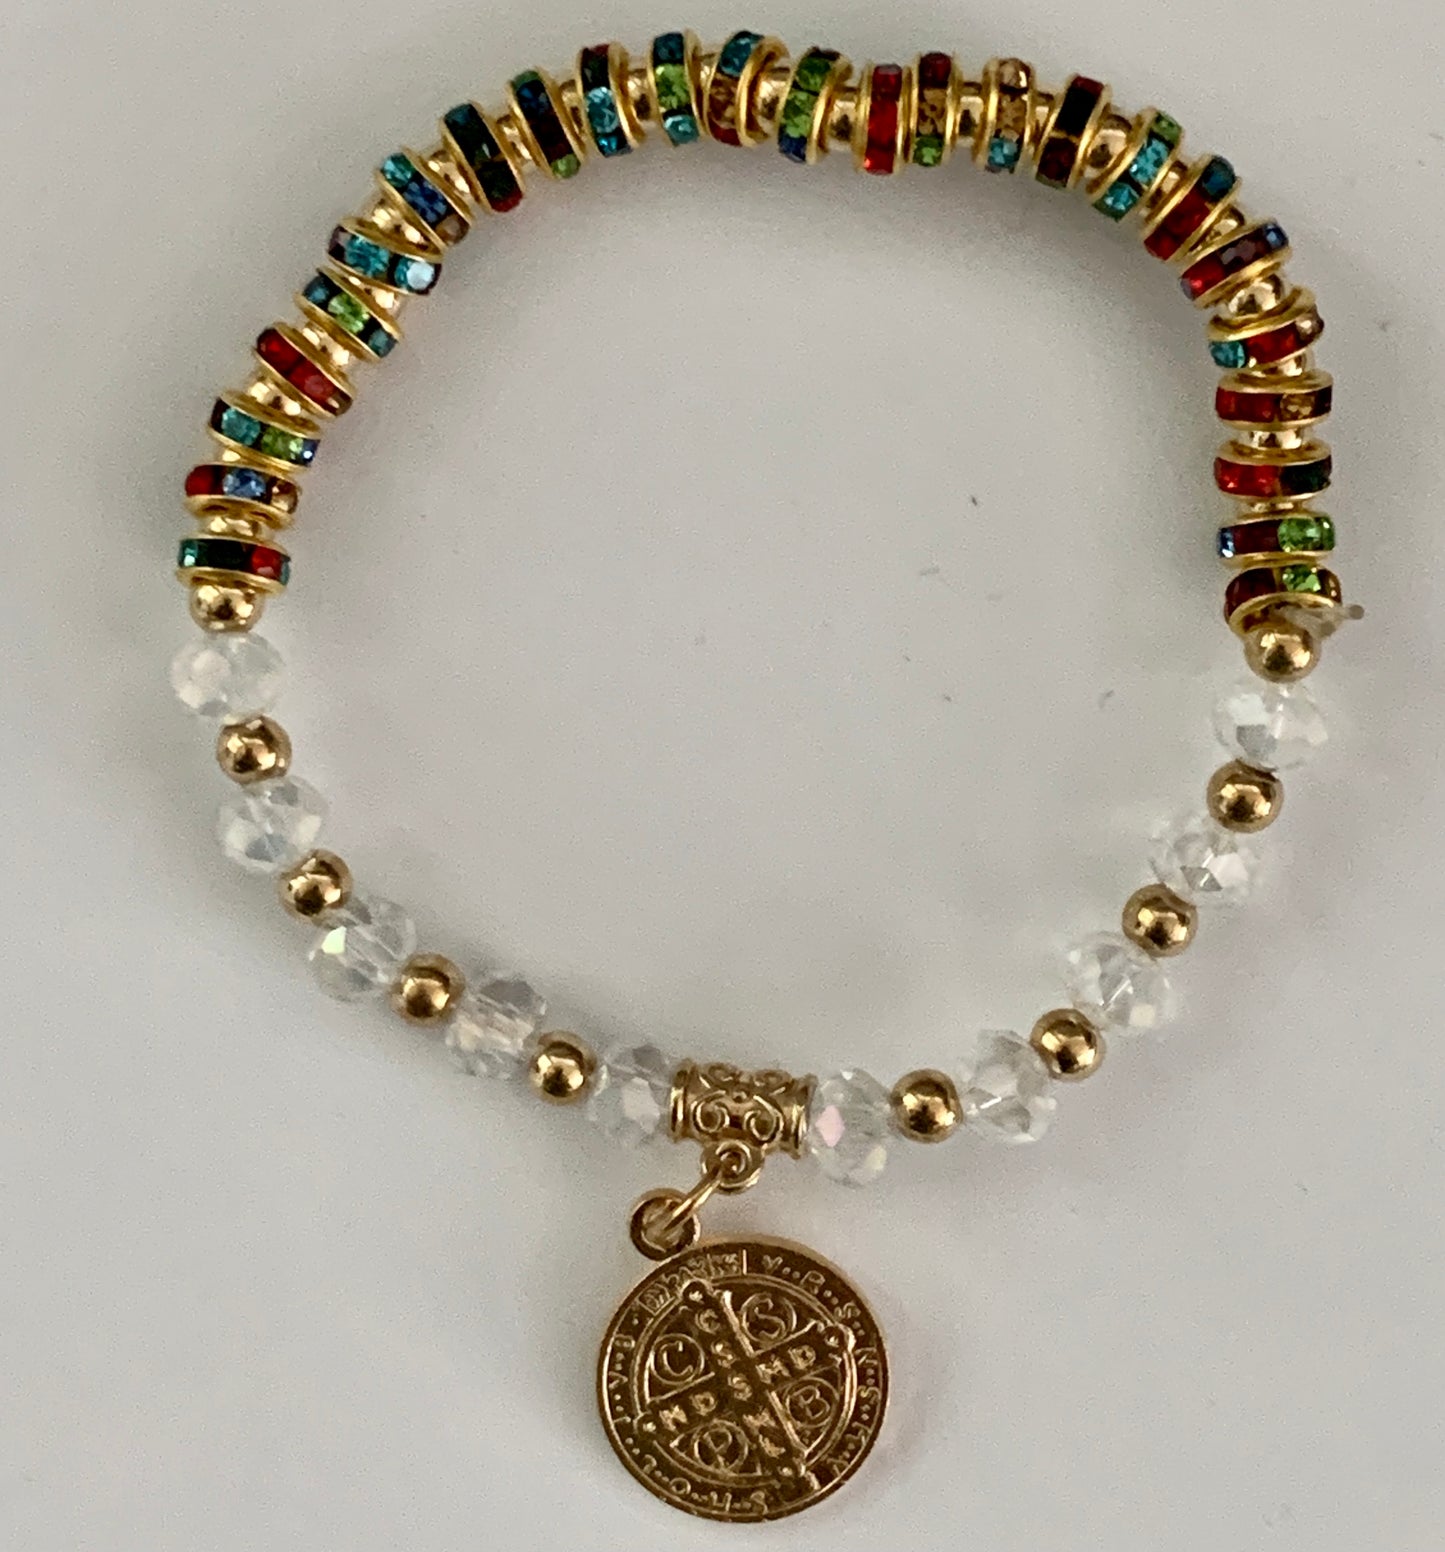 St. Benedict Key Charm Multi Color Bracelet